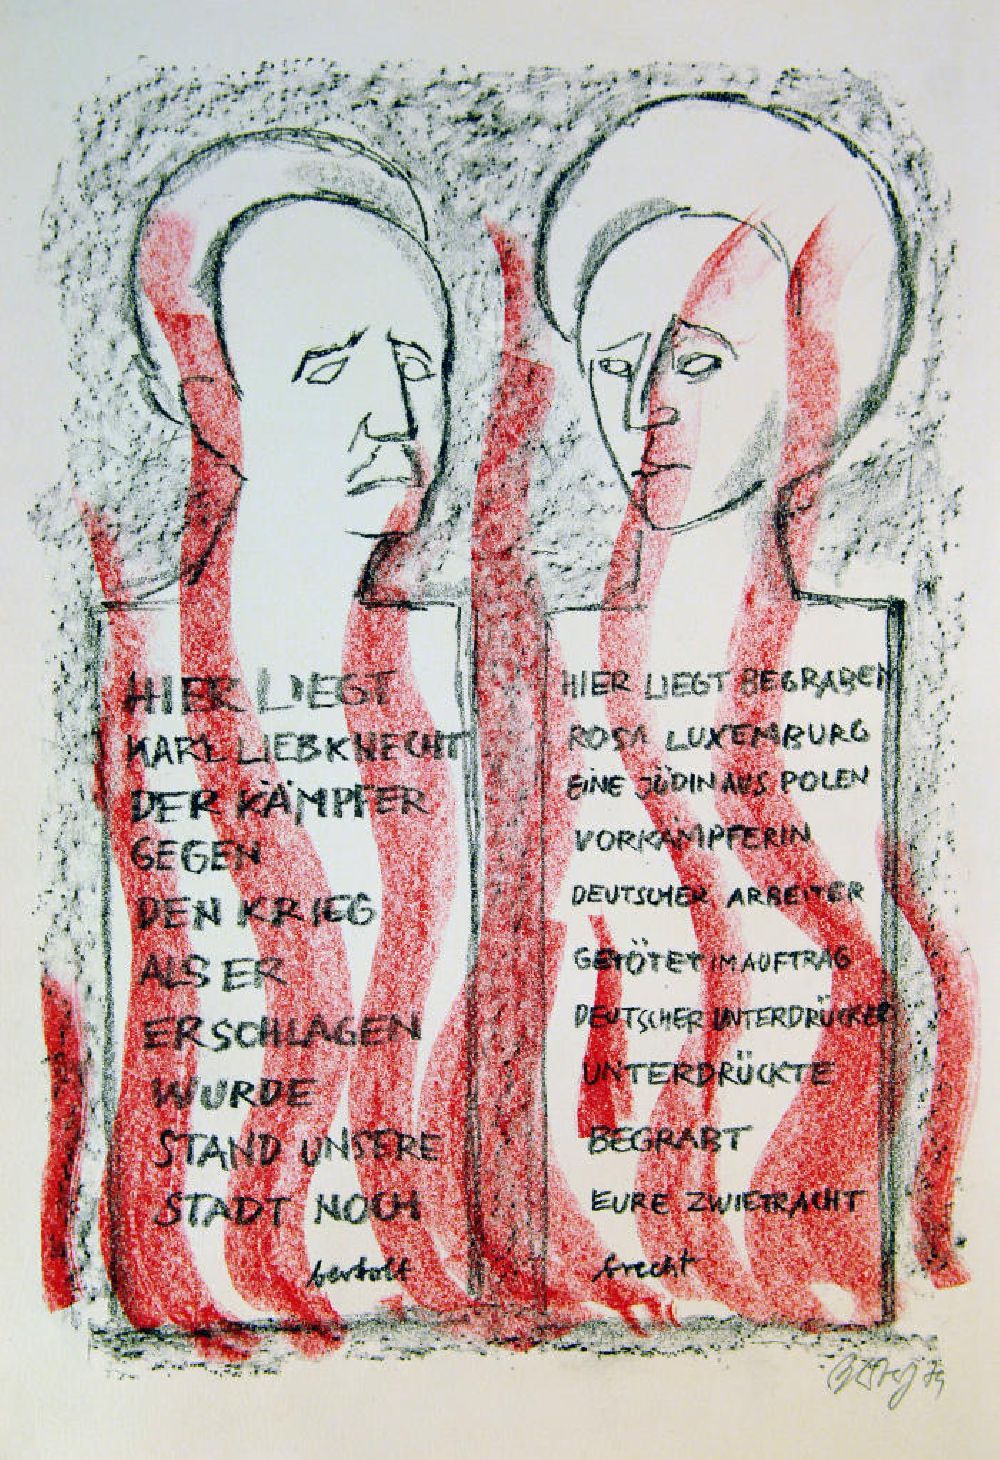 GDR picture archive: Berlin - Grafik von Herbert Sandberg Grabschriften für Karl und Rosa aus dem Jahr 1979 (Gedenken an Karl Liebknecht *13.08.1971 † 15.01.1919 und Rosa Luxemburg *05.03.1971 † 15.01.1919) , 30,0x41,